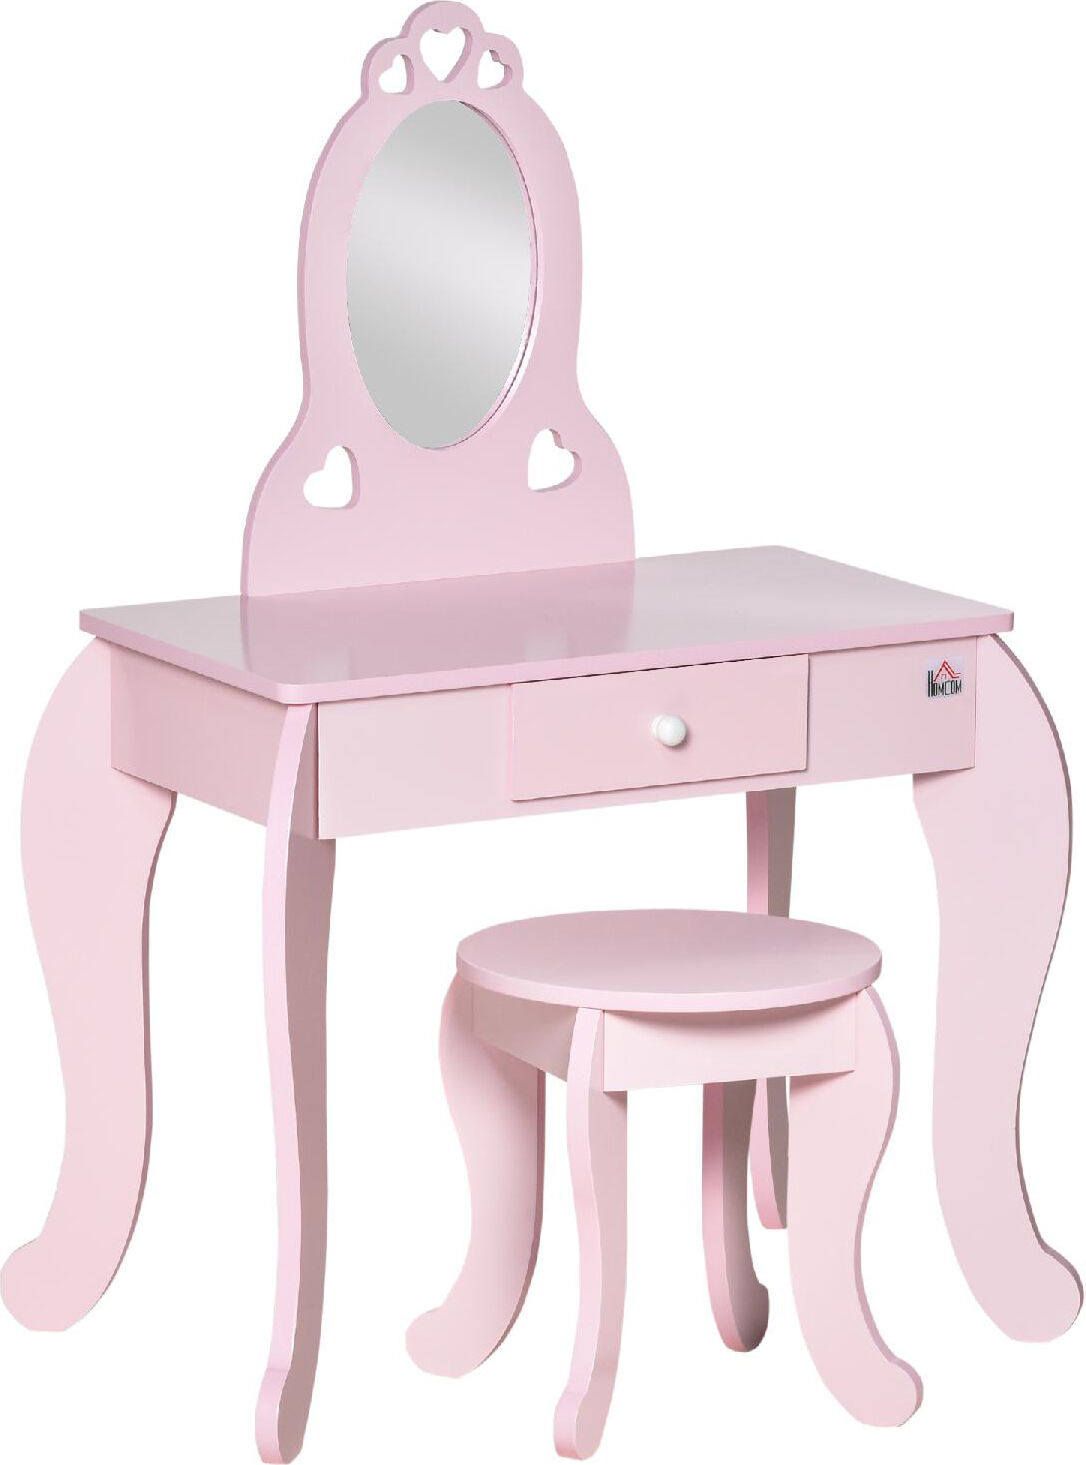 dechome 36 tavolo trucco per bambini con sgabello in legno toeletta con specchio e cassetto 60x x88cm rosa - 36